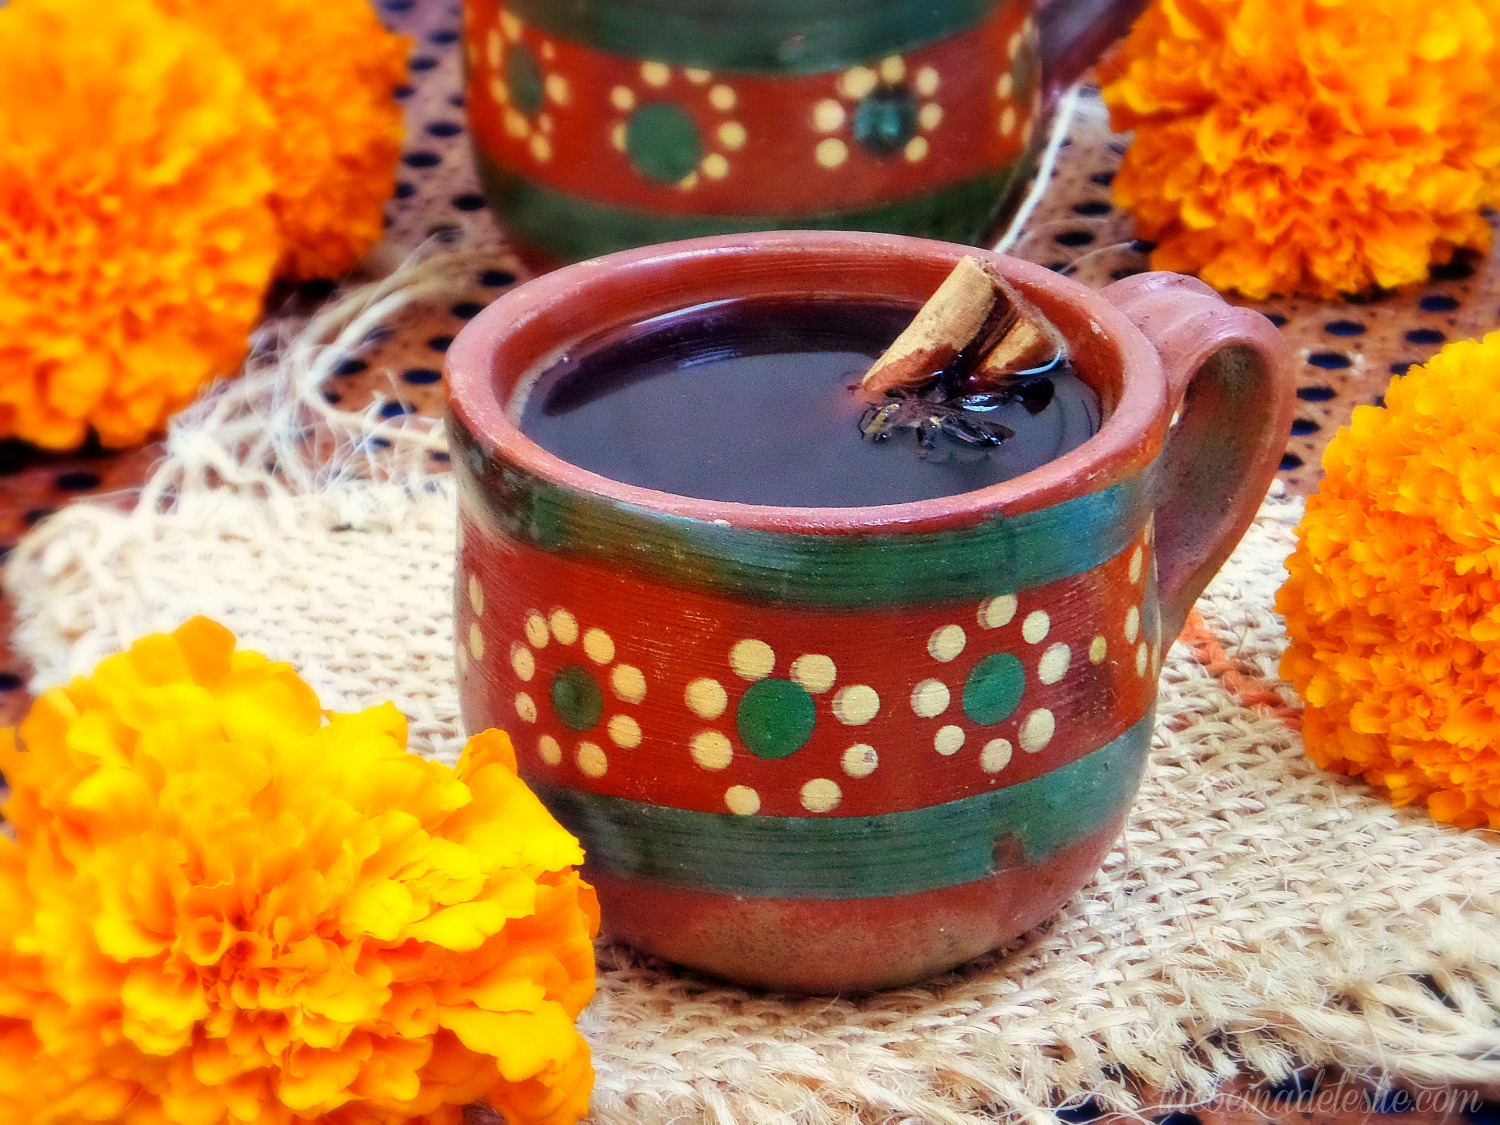 CAFE de OLLA TRADITIONAL MEXICAN recipe 